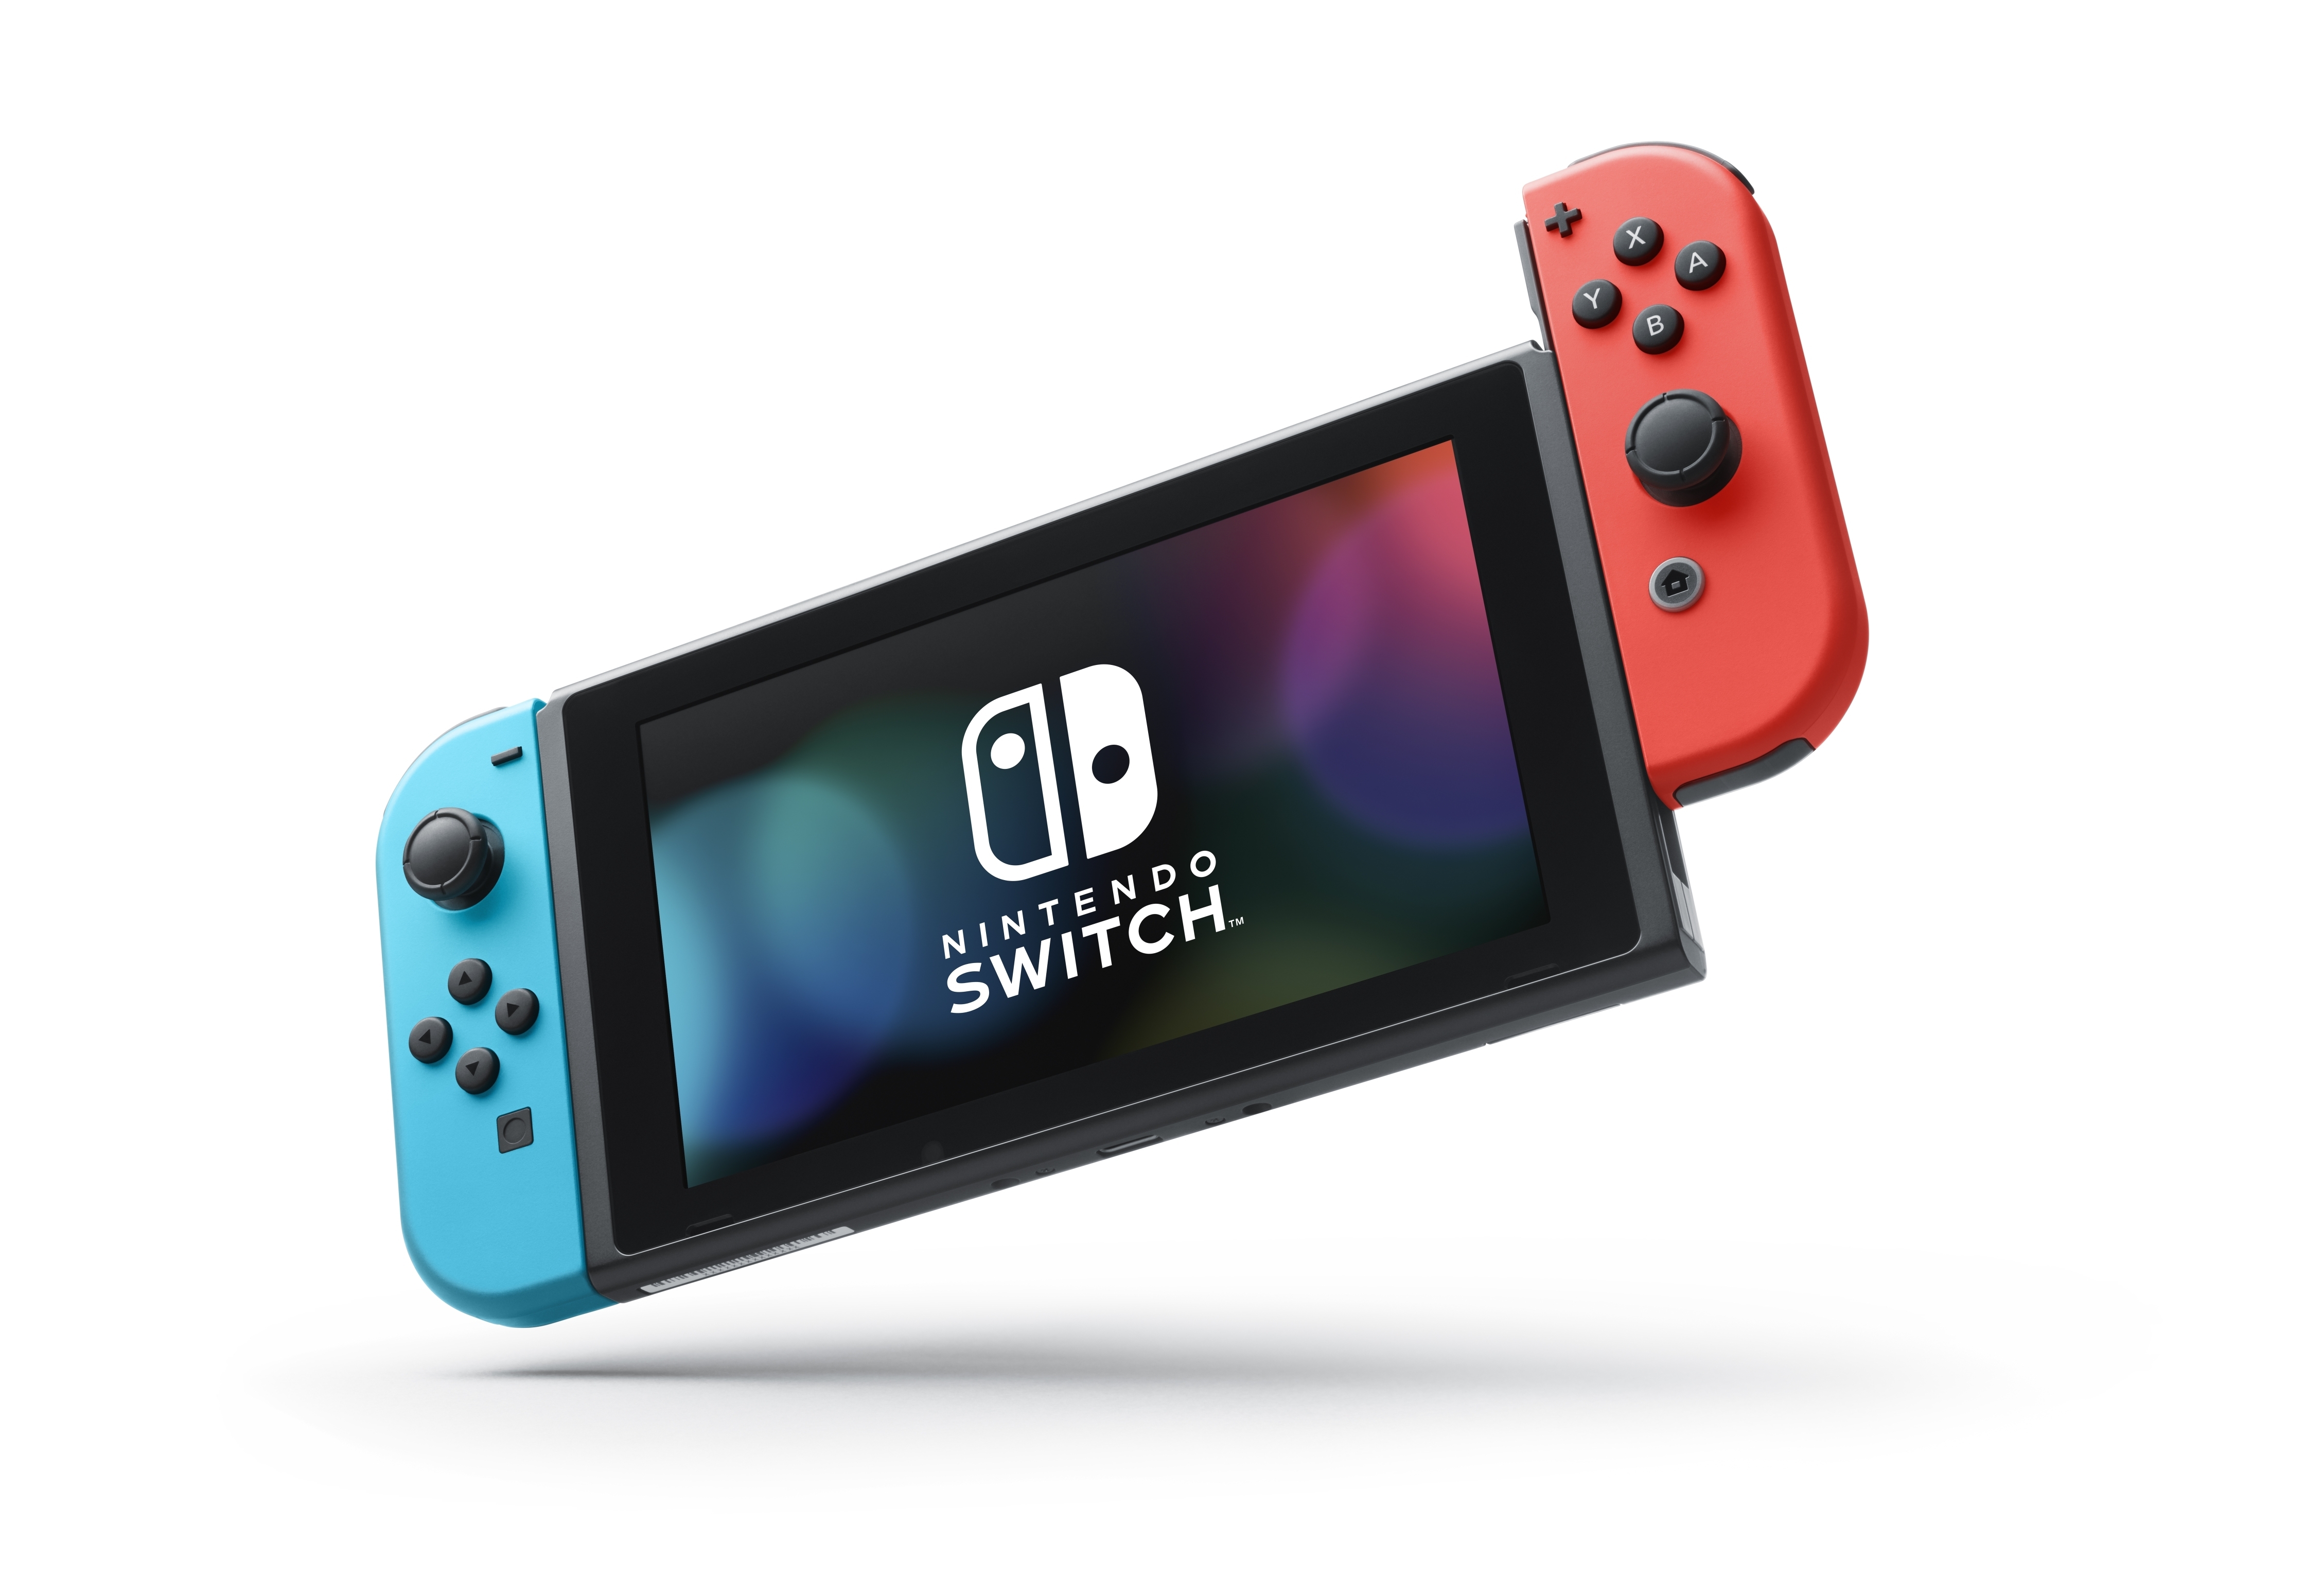 Cổ phiếu của công ty Nintendo bất ngờ rớt giá sau khi ra mắt máy Nintendo Switch